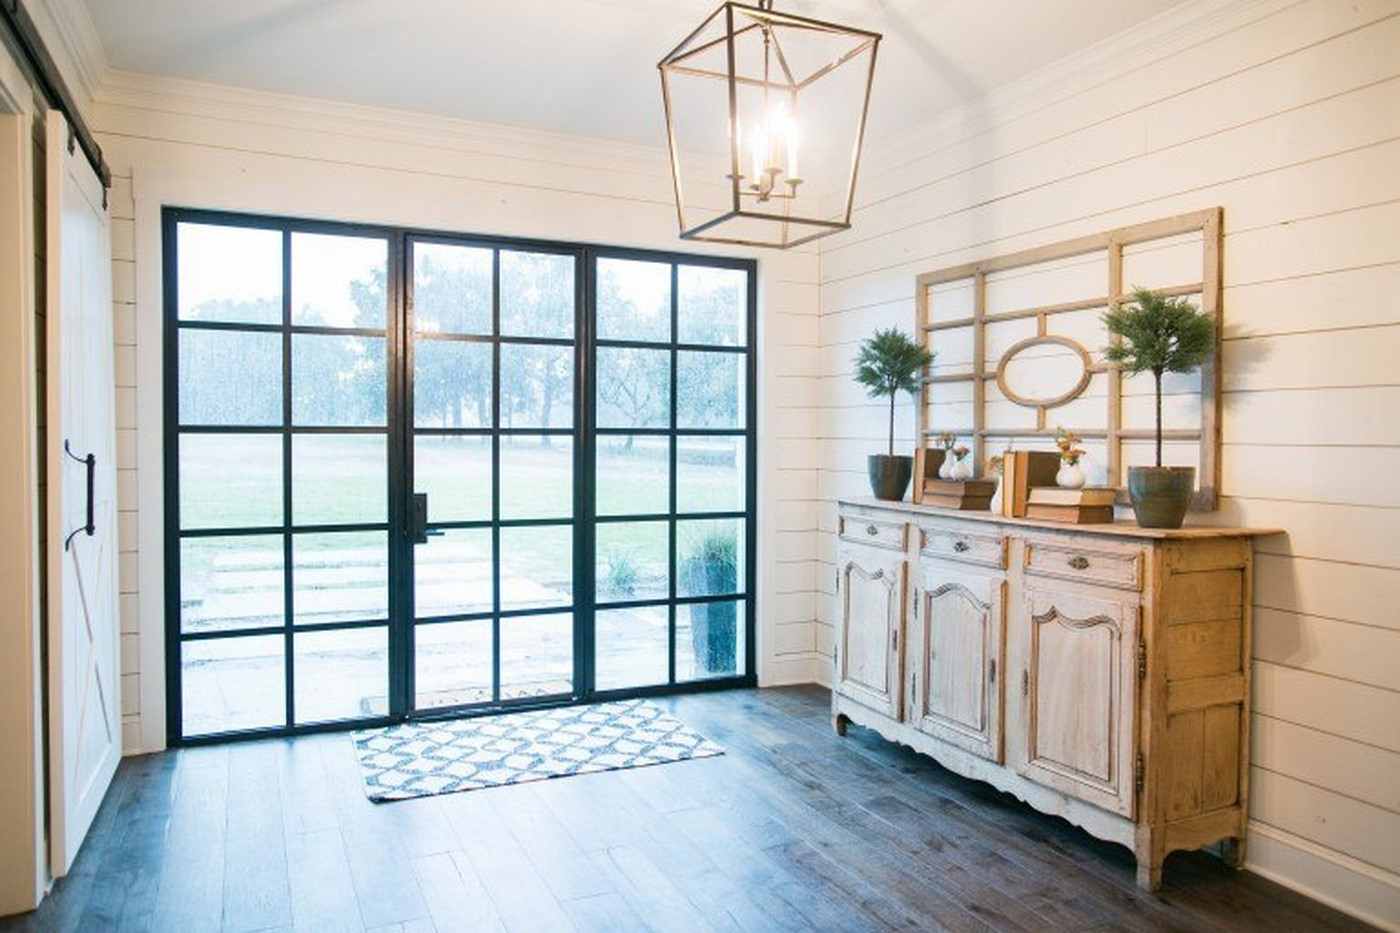 Eingangshalle im Landhausstil Kommoce aus Holz Türen aus Glas und Stahl